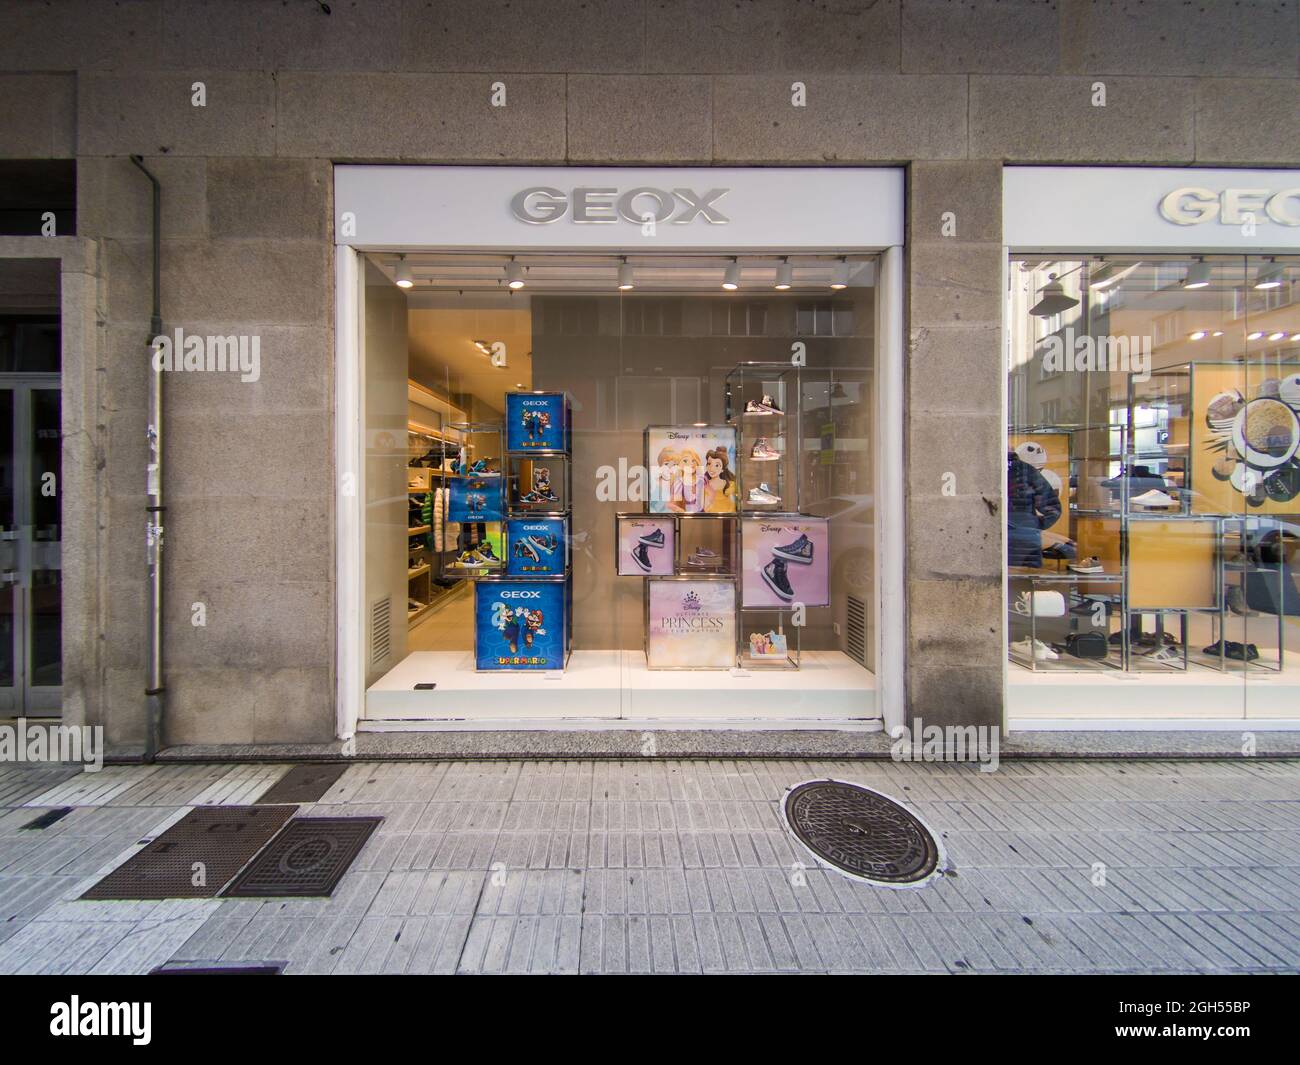 VIGO, - 23 de agosto de 2021: La tienda GEOX de la marca con letrero, logotipo en España, boutique de español Fotografía de stock Alamy